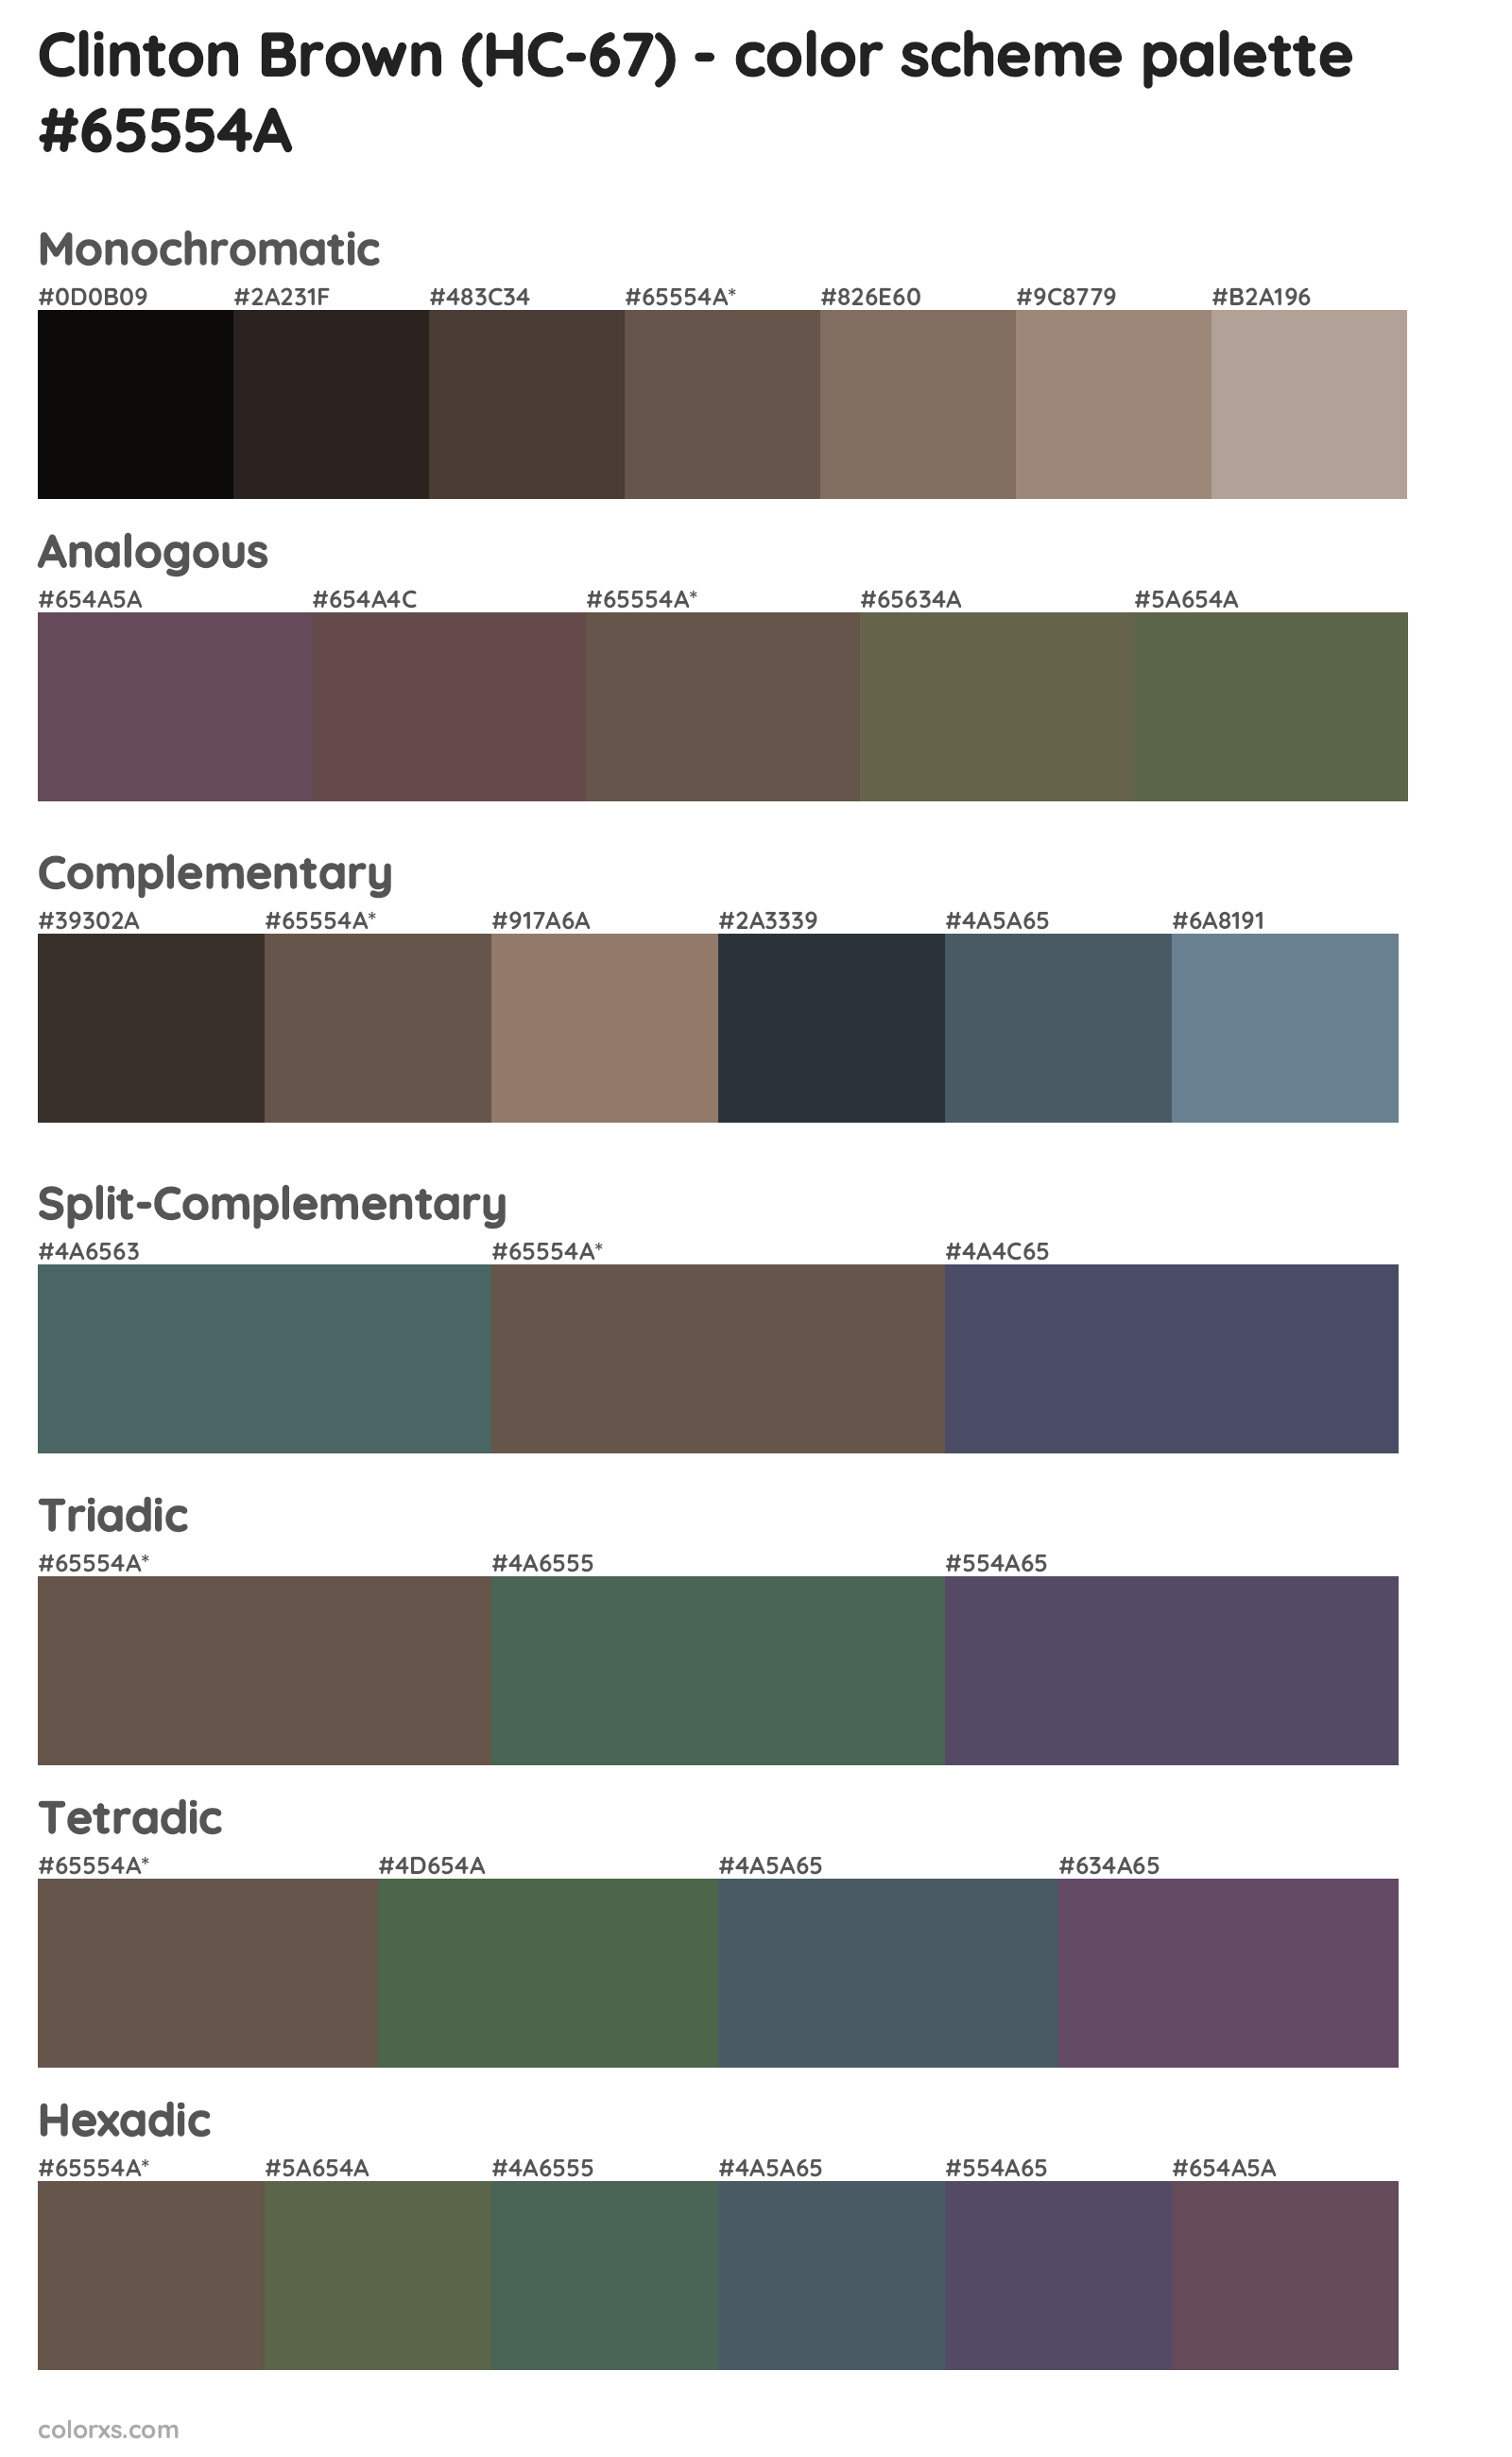 Clinton Brown (HC-67) Color Scheme Palettes